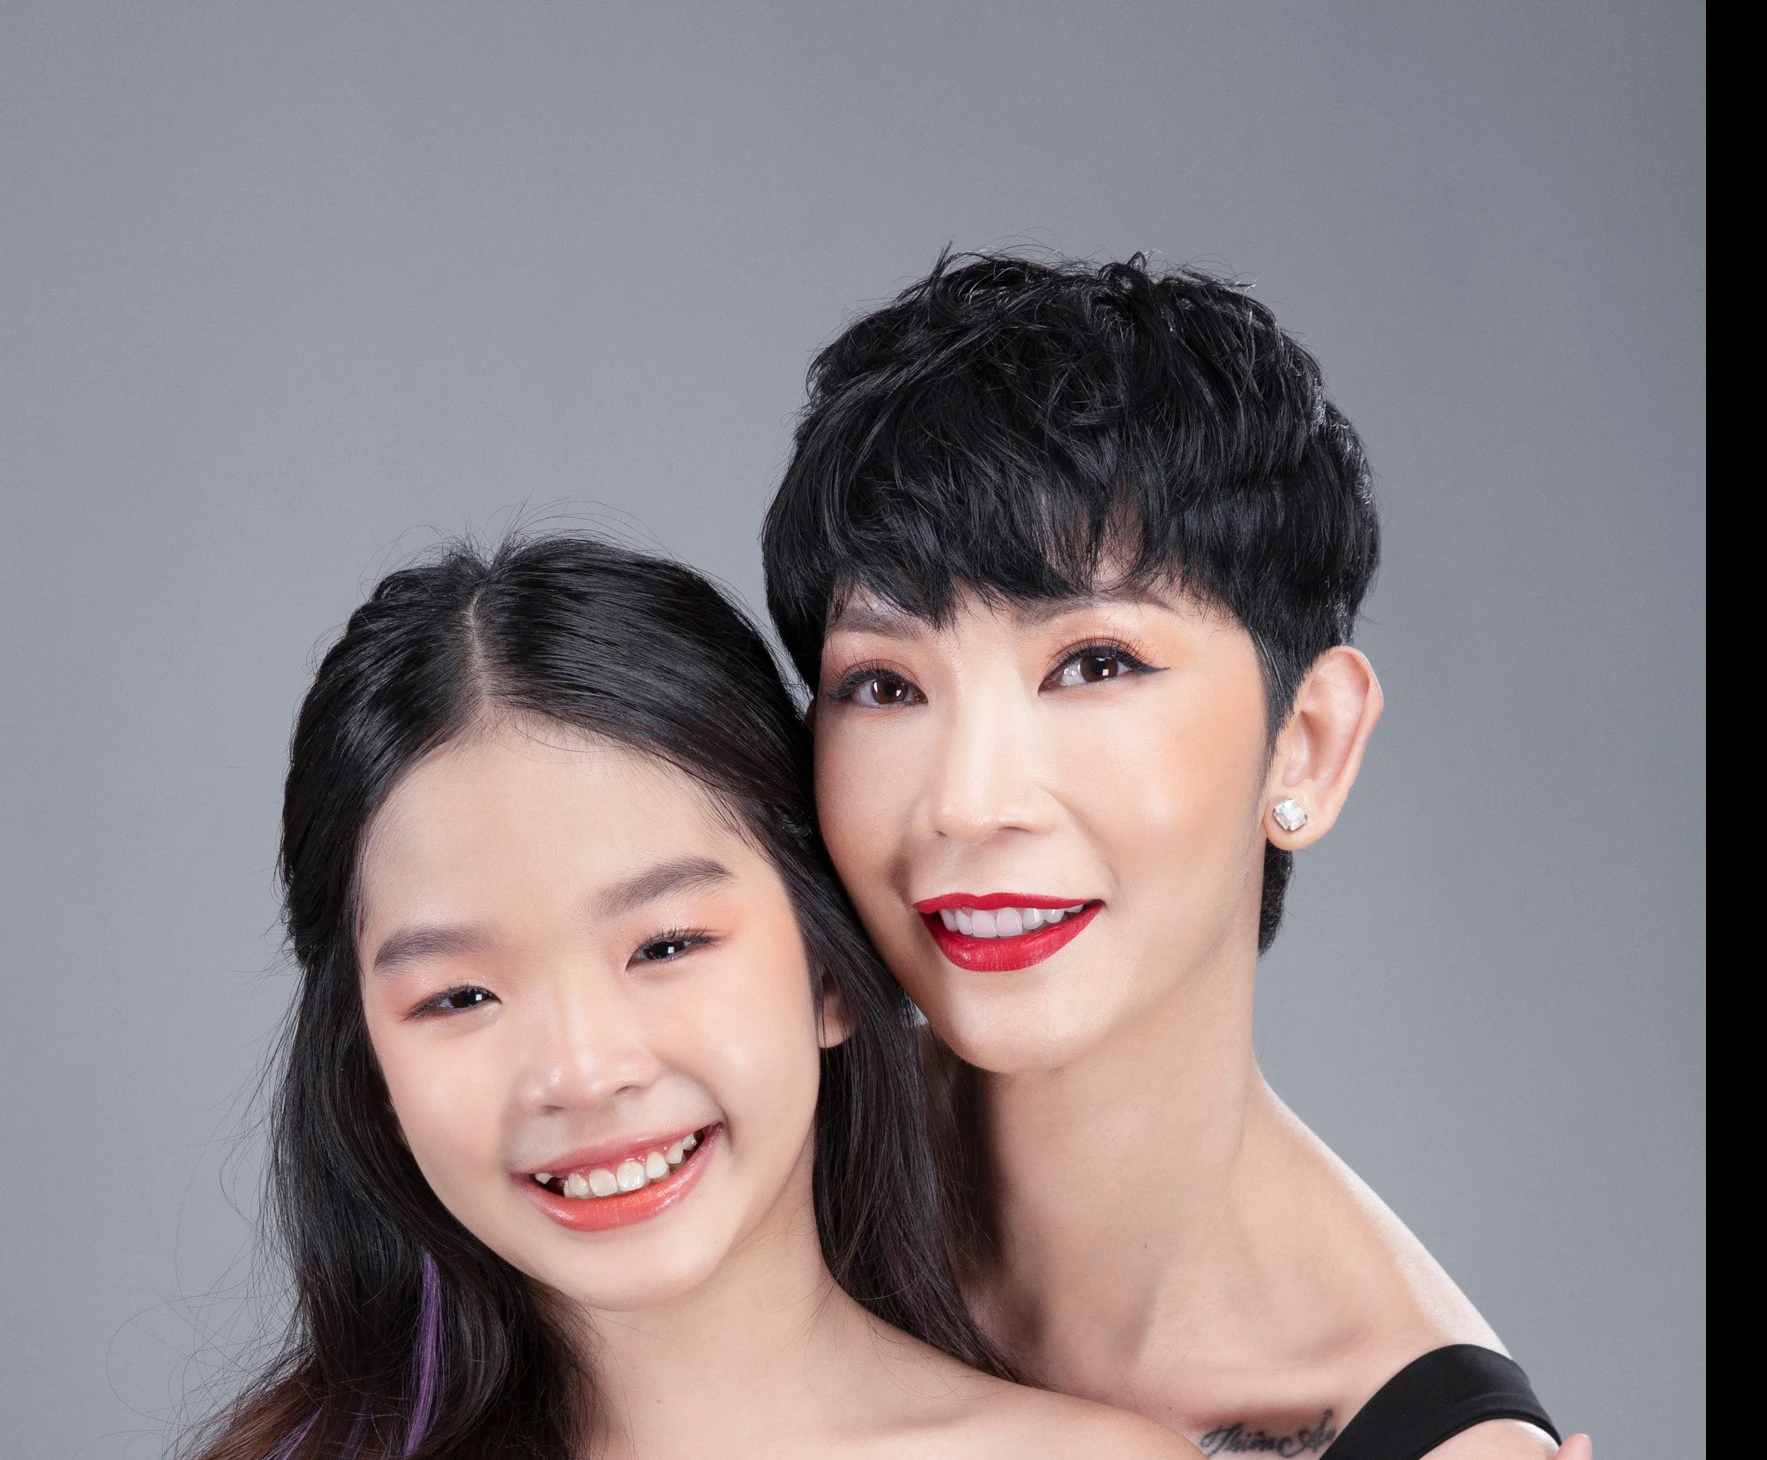 400 mẫu nhí sẽ trình diễn trong show thời trang trẻ em lớn nhất Việt Nam